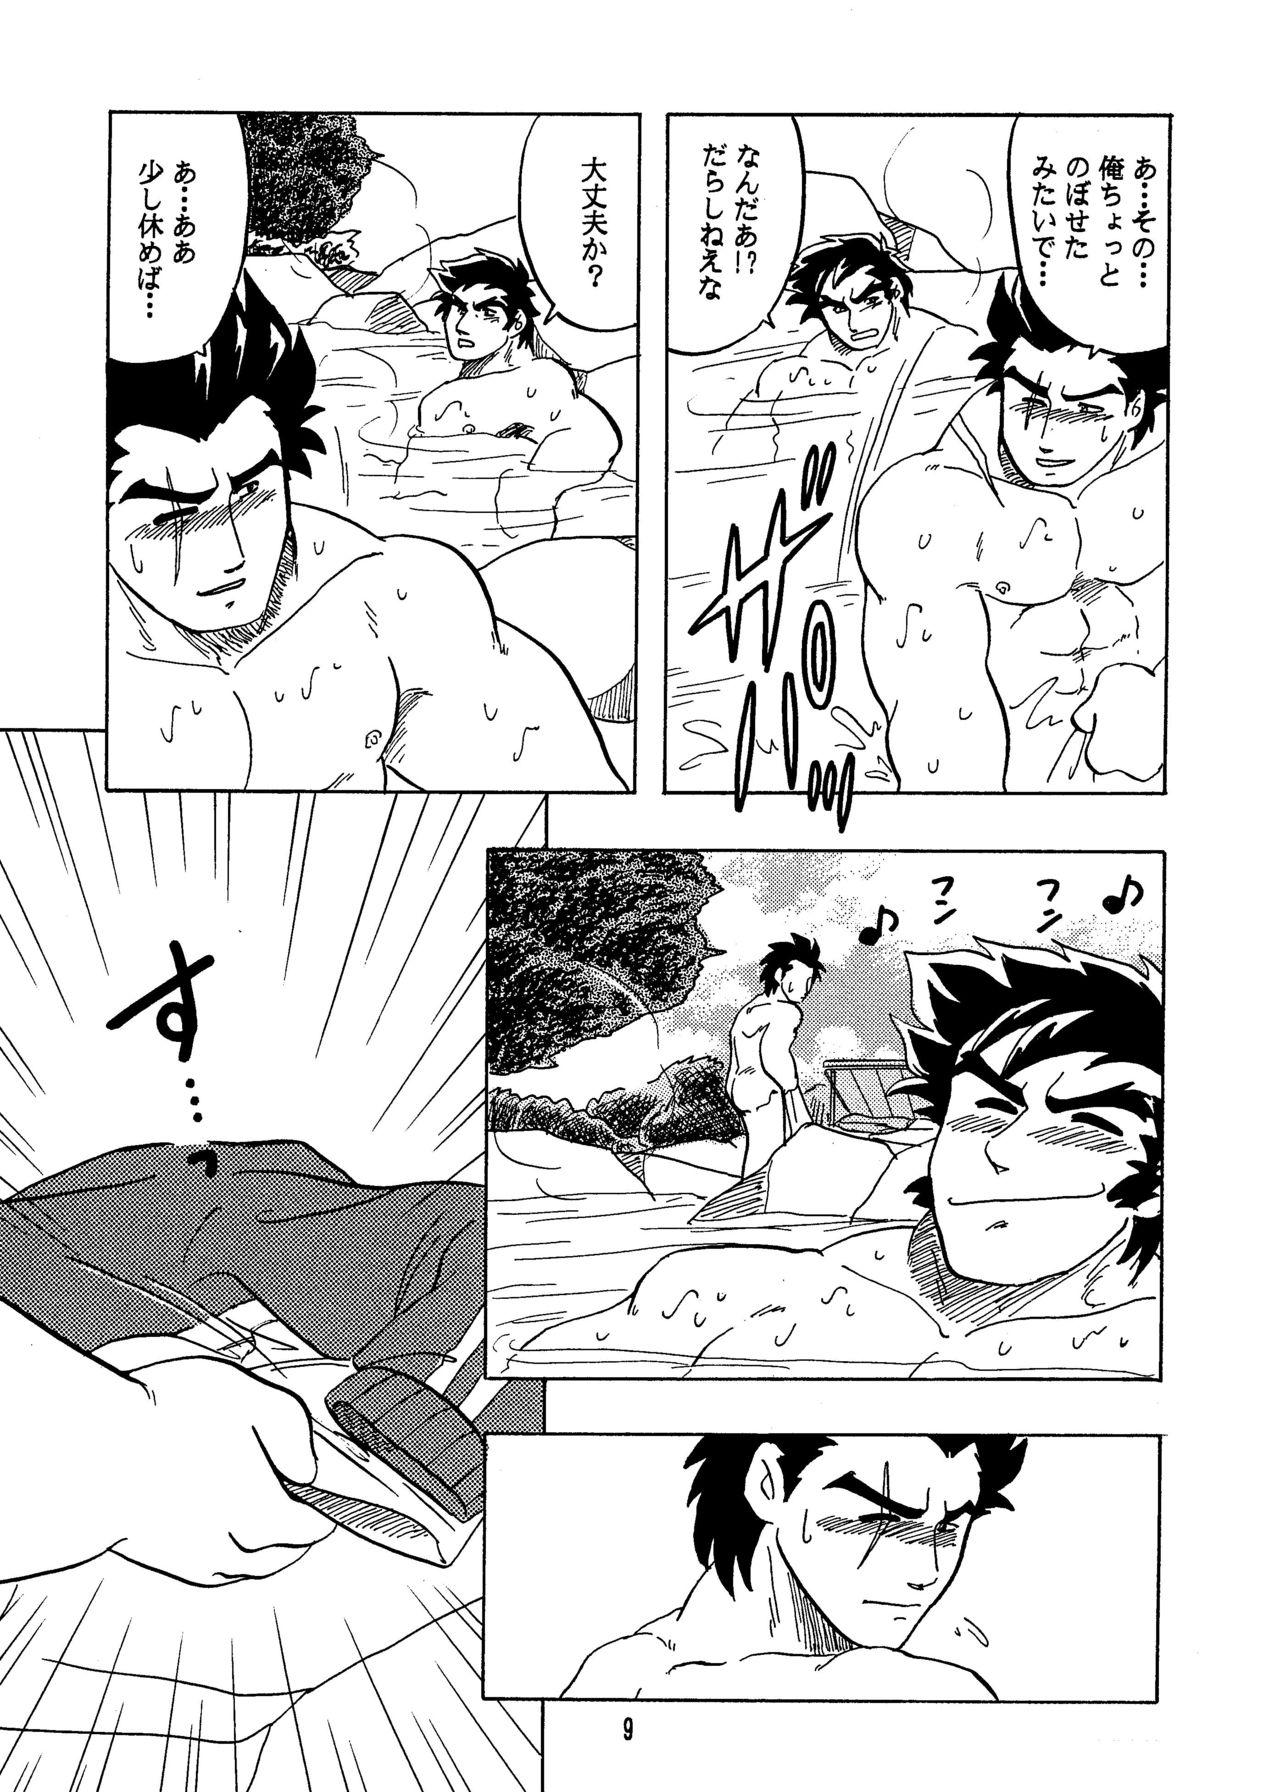 Bondagesex Moero!! Hayato to Daigo - Rival schools Tgirls - Page 8